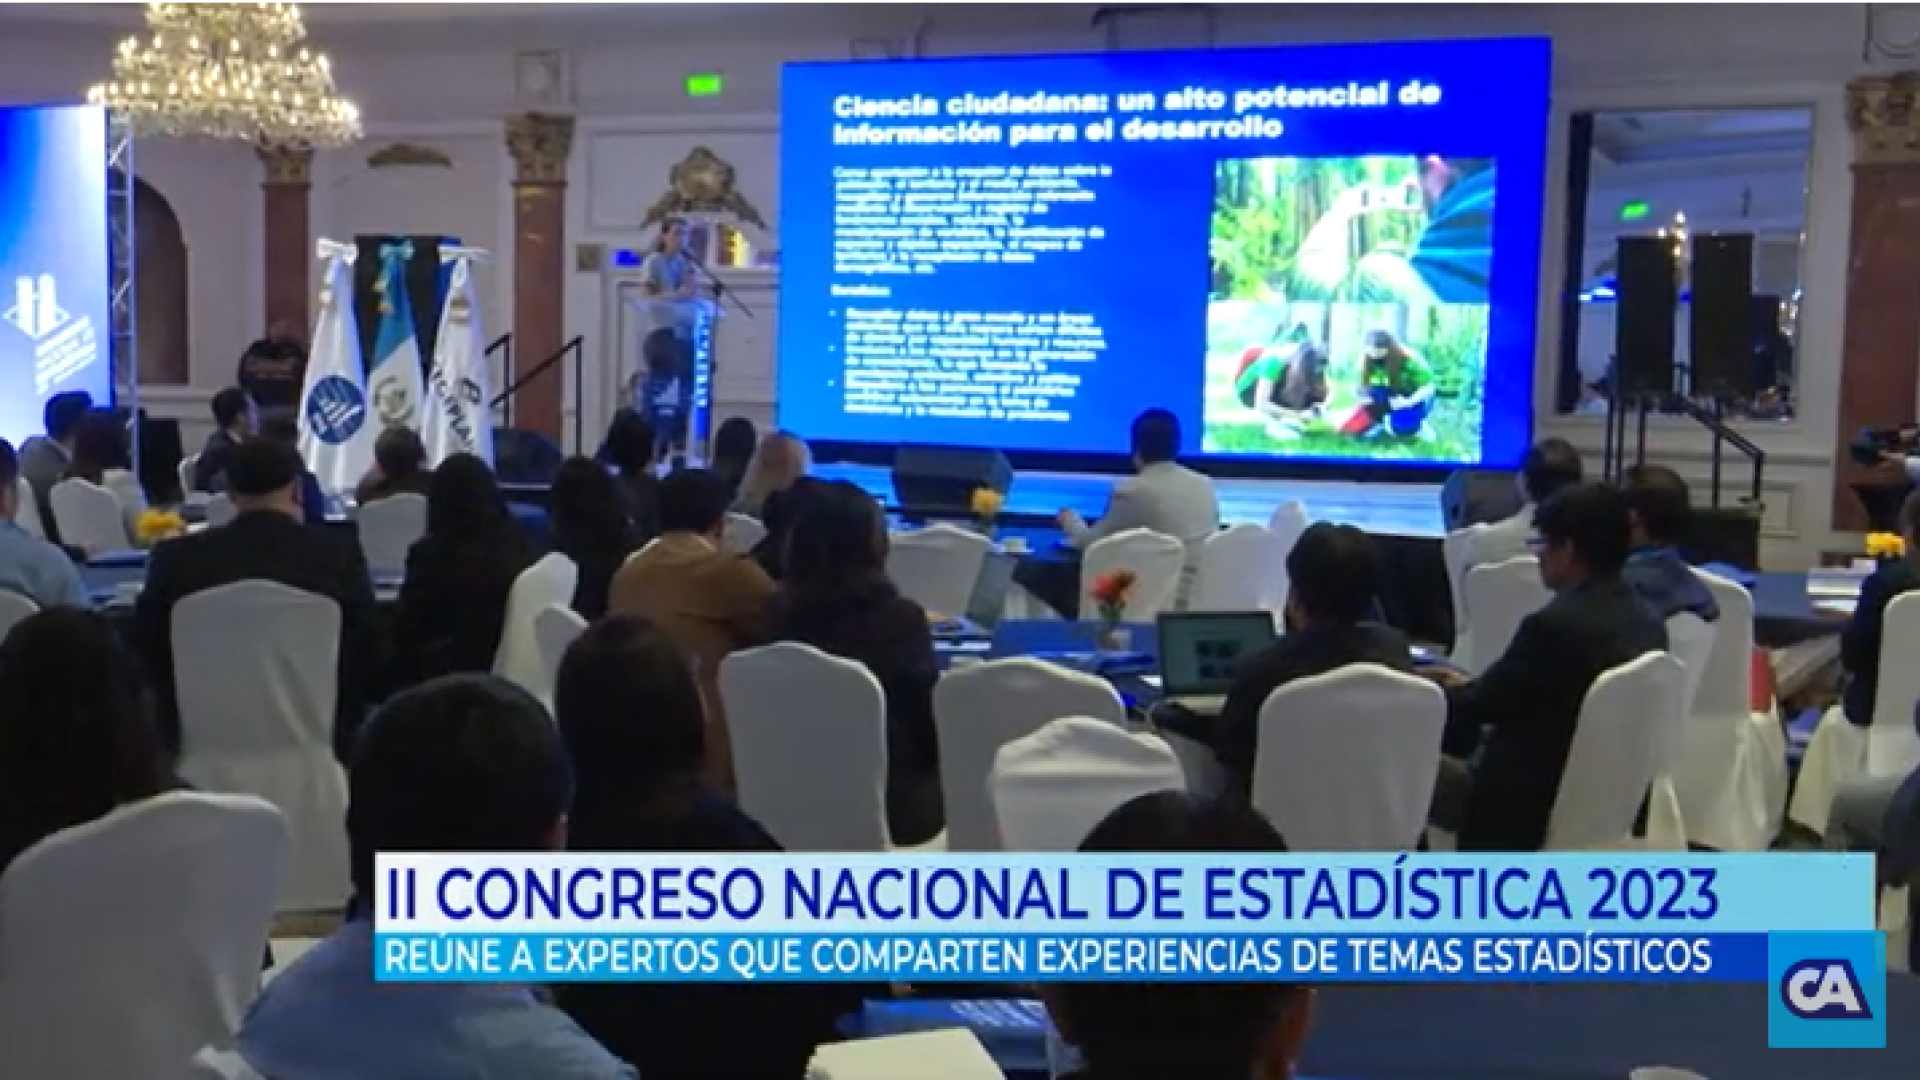 segundo-congreso-nacional-estadistica_guatemala_2023.png